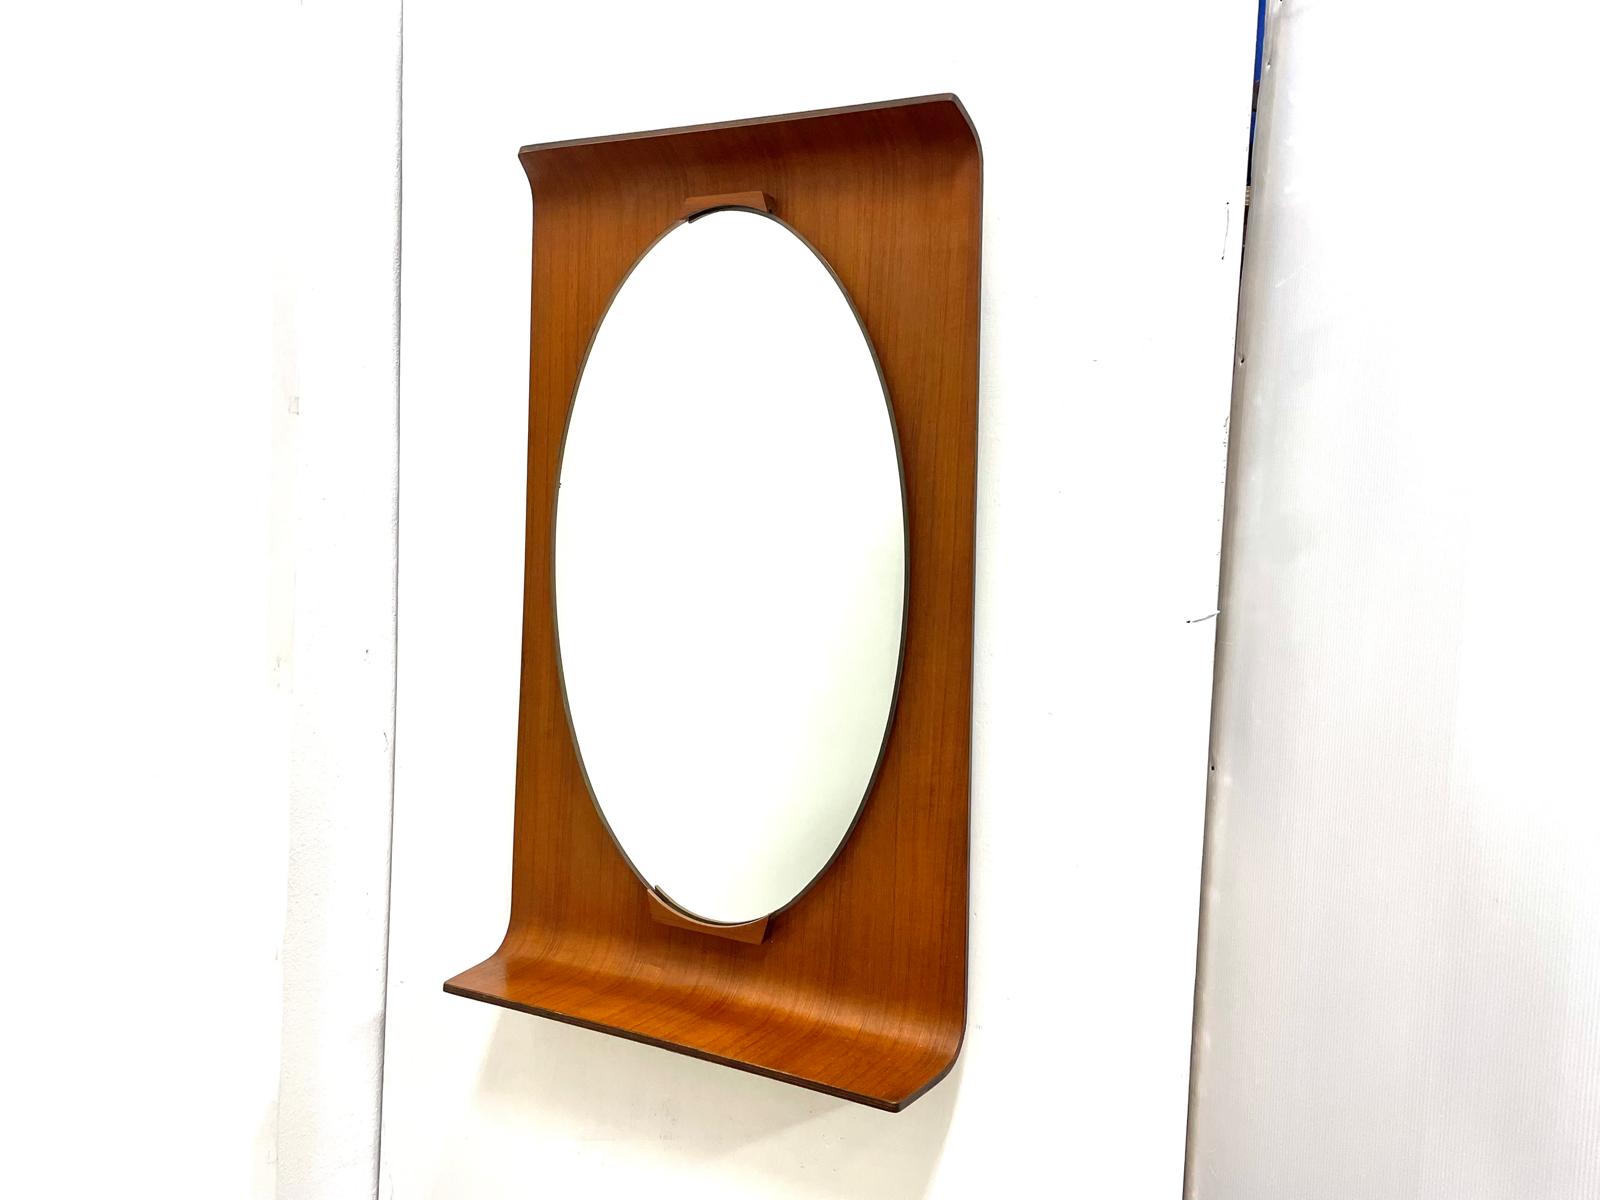 Specchio ovale anni ’50 con supporto in legno curvato rettangolare.